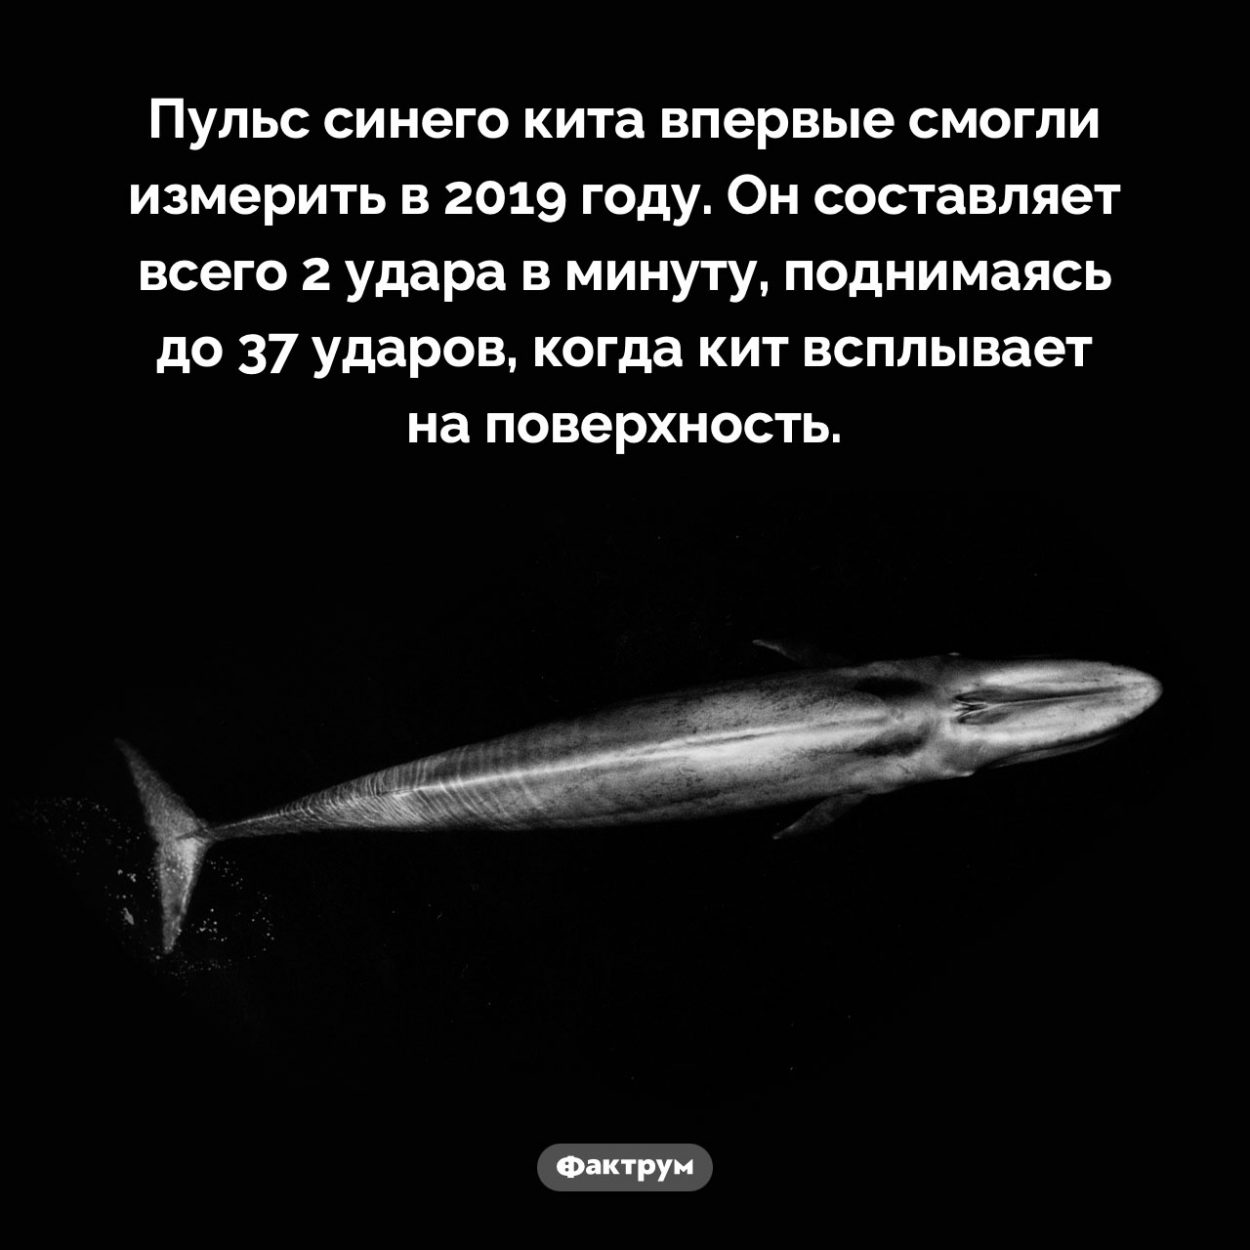 Сердцебиение кита. Пульс синего кита впервые смогли измерить в 2019 году. Он составляет всего 2 удара в минуту, поднимаясь до 37 ударов, когда кит всплывает на поверхность.